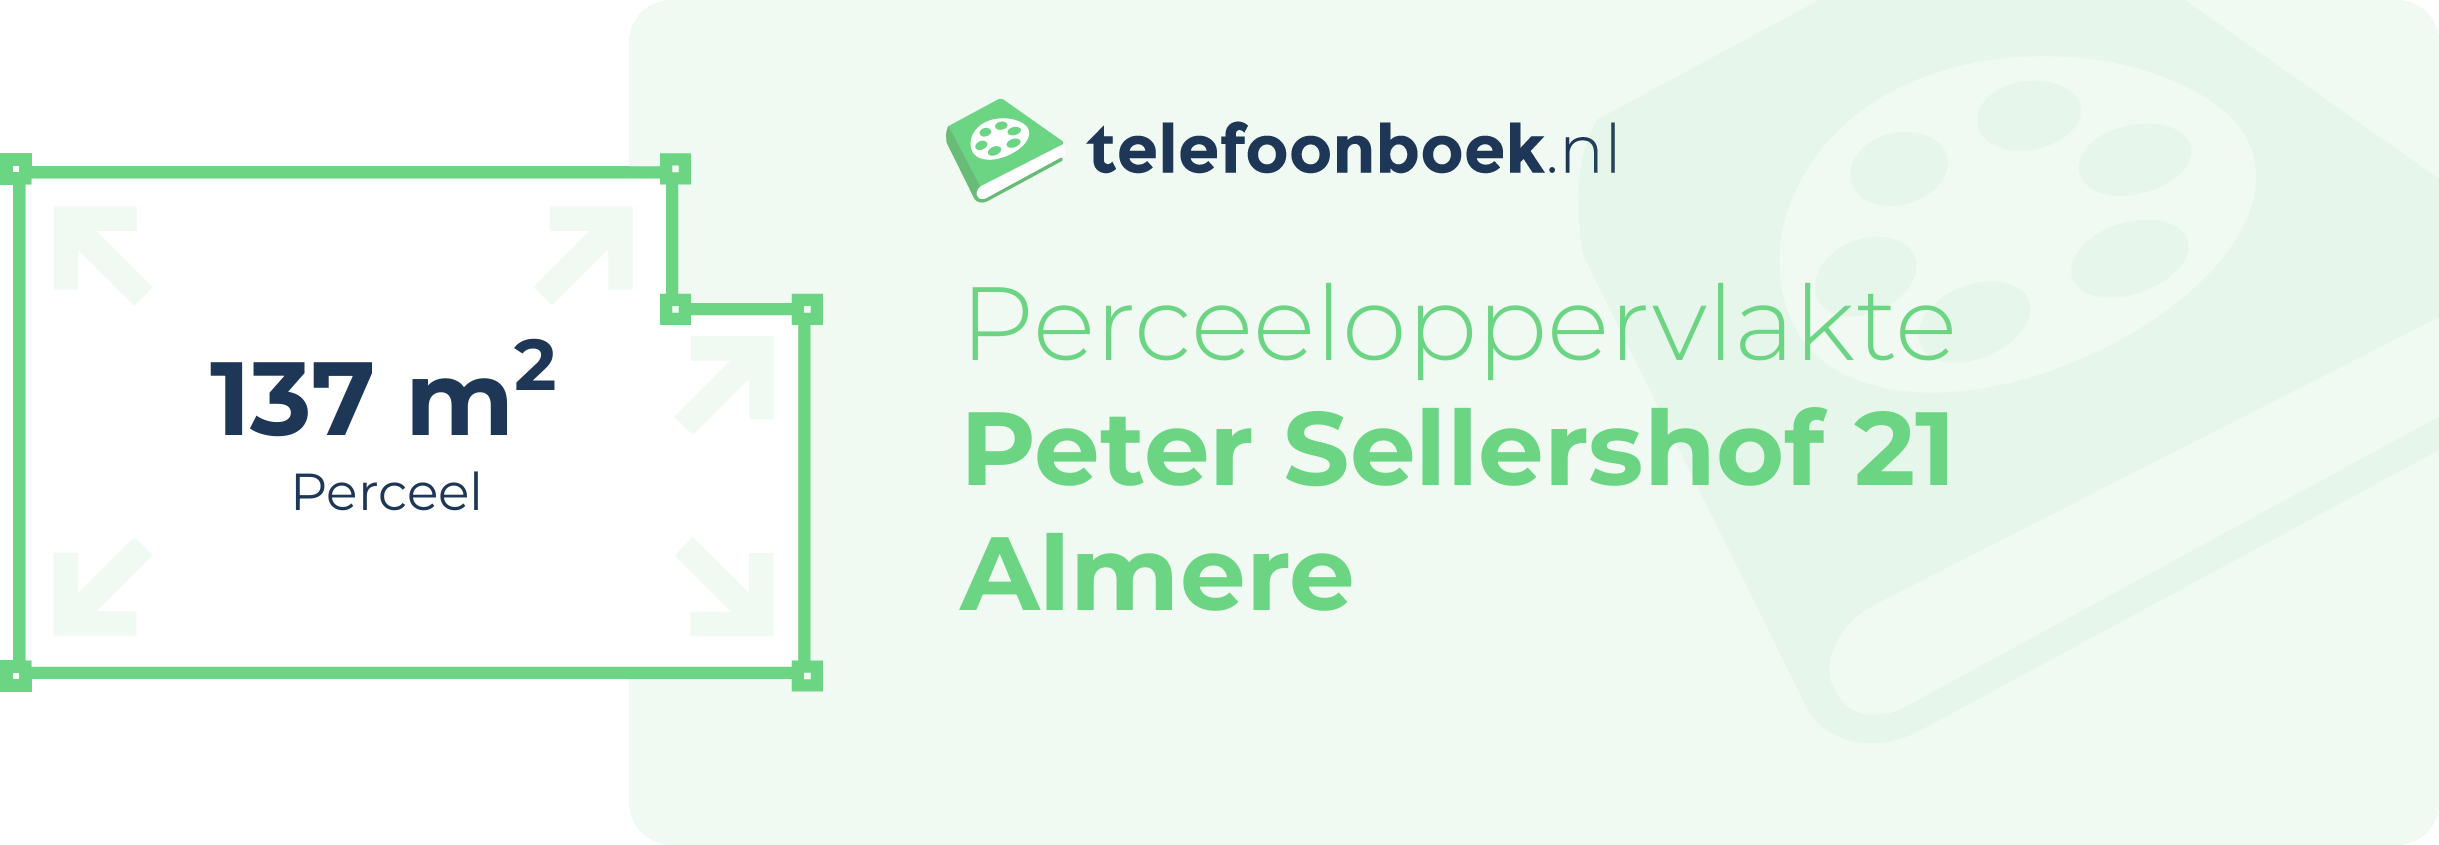 Perceeloppervlakte Peter Sellershof 21 Almere